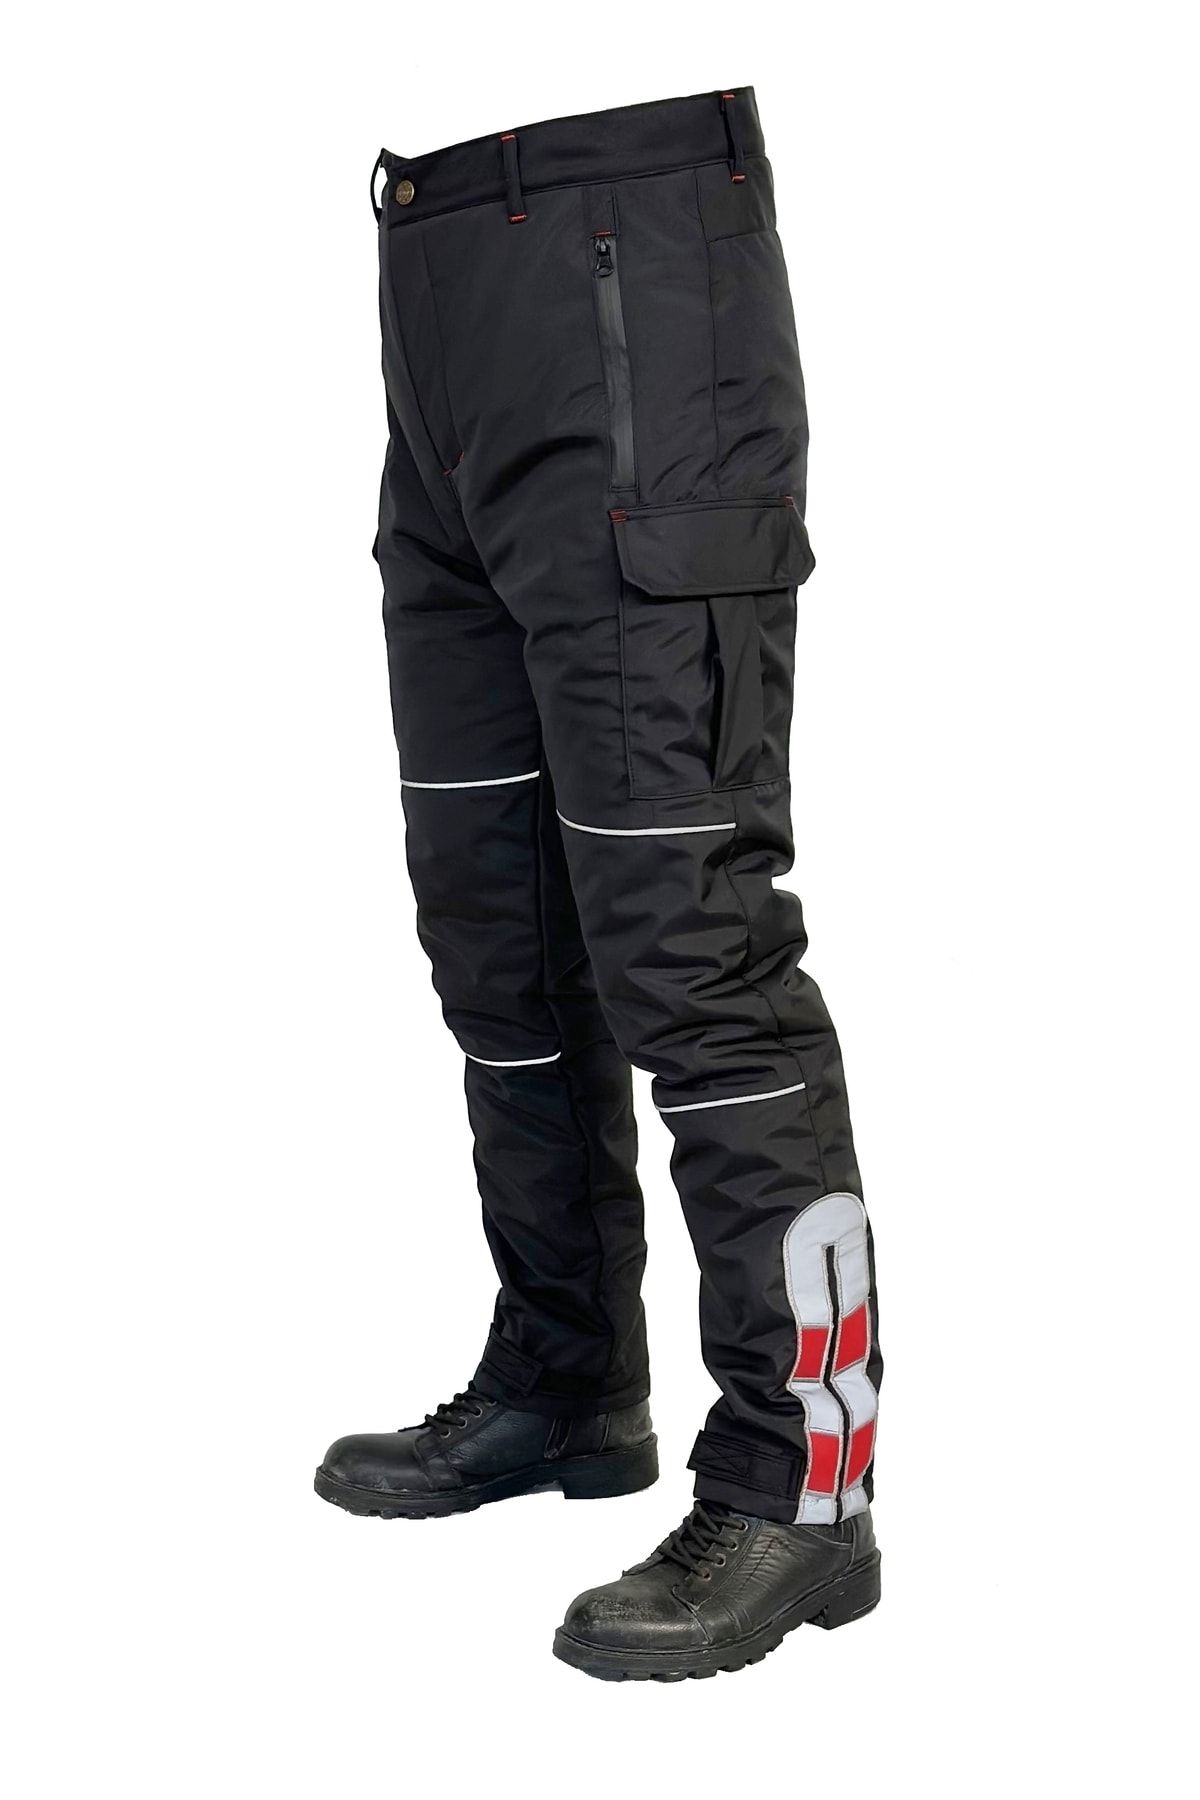 Ysf WorkWear İş Market Rüzgar Geçirmez Kışlık Siyah Motorcu Pantolonu